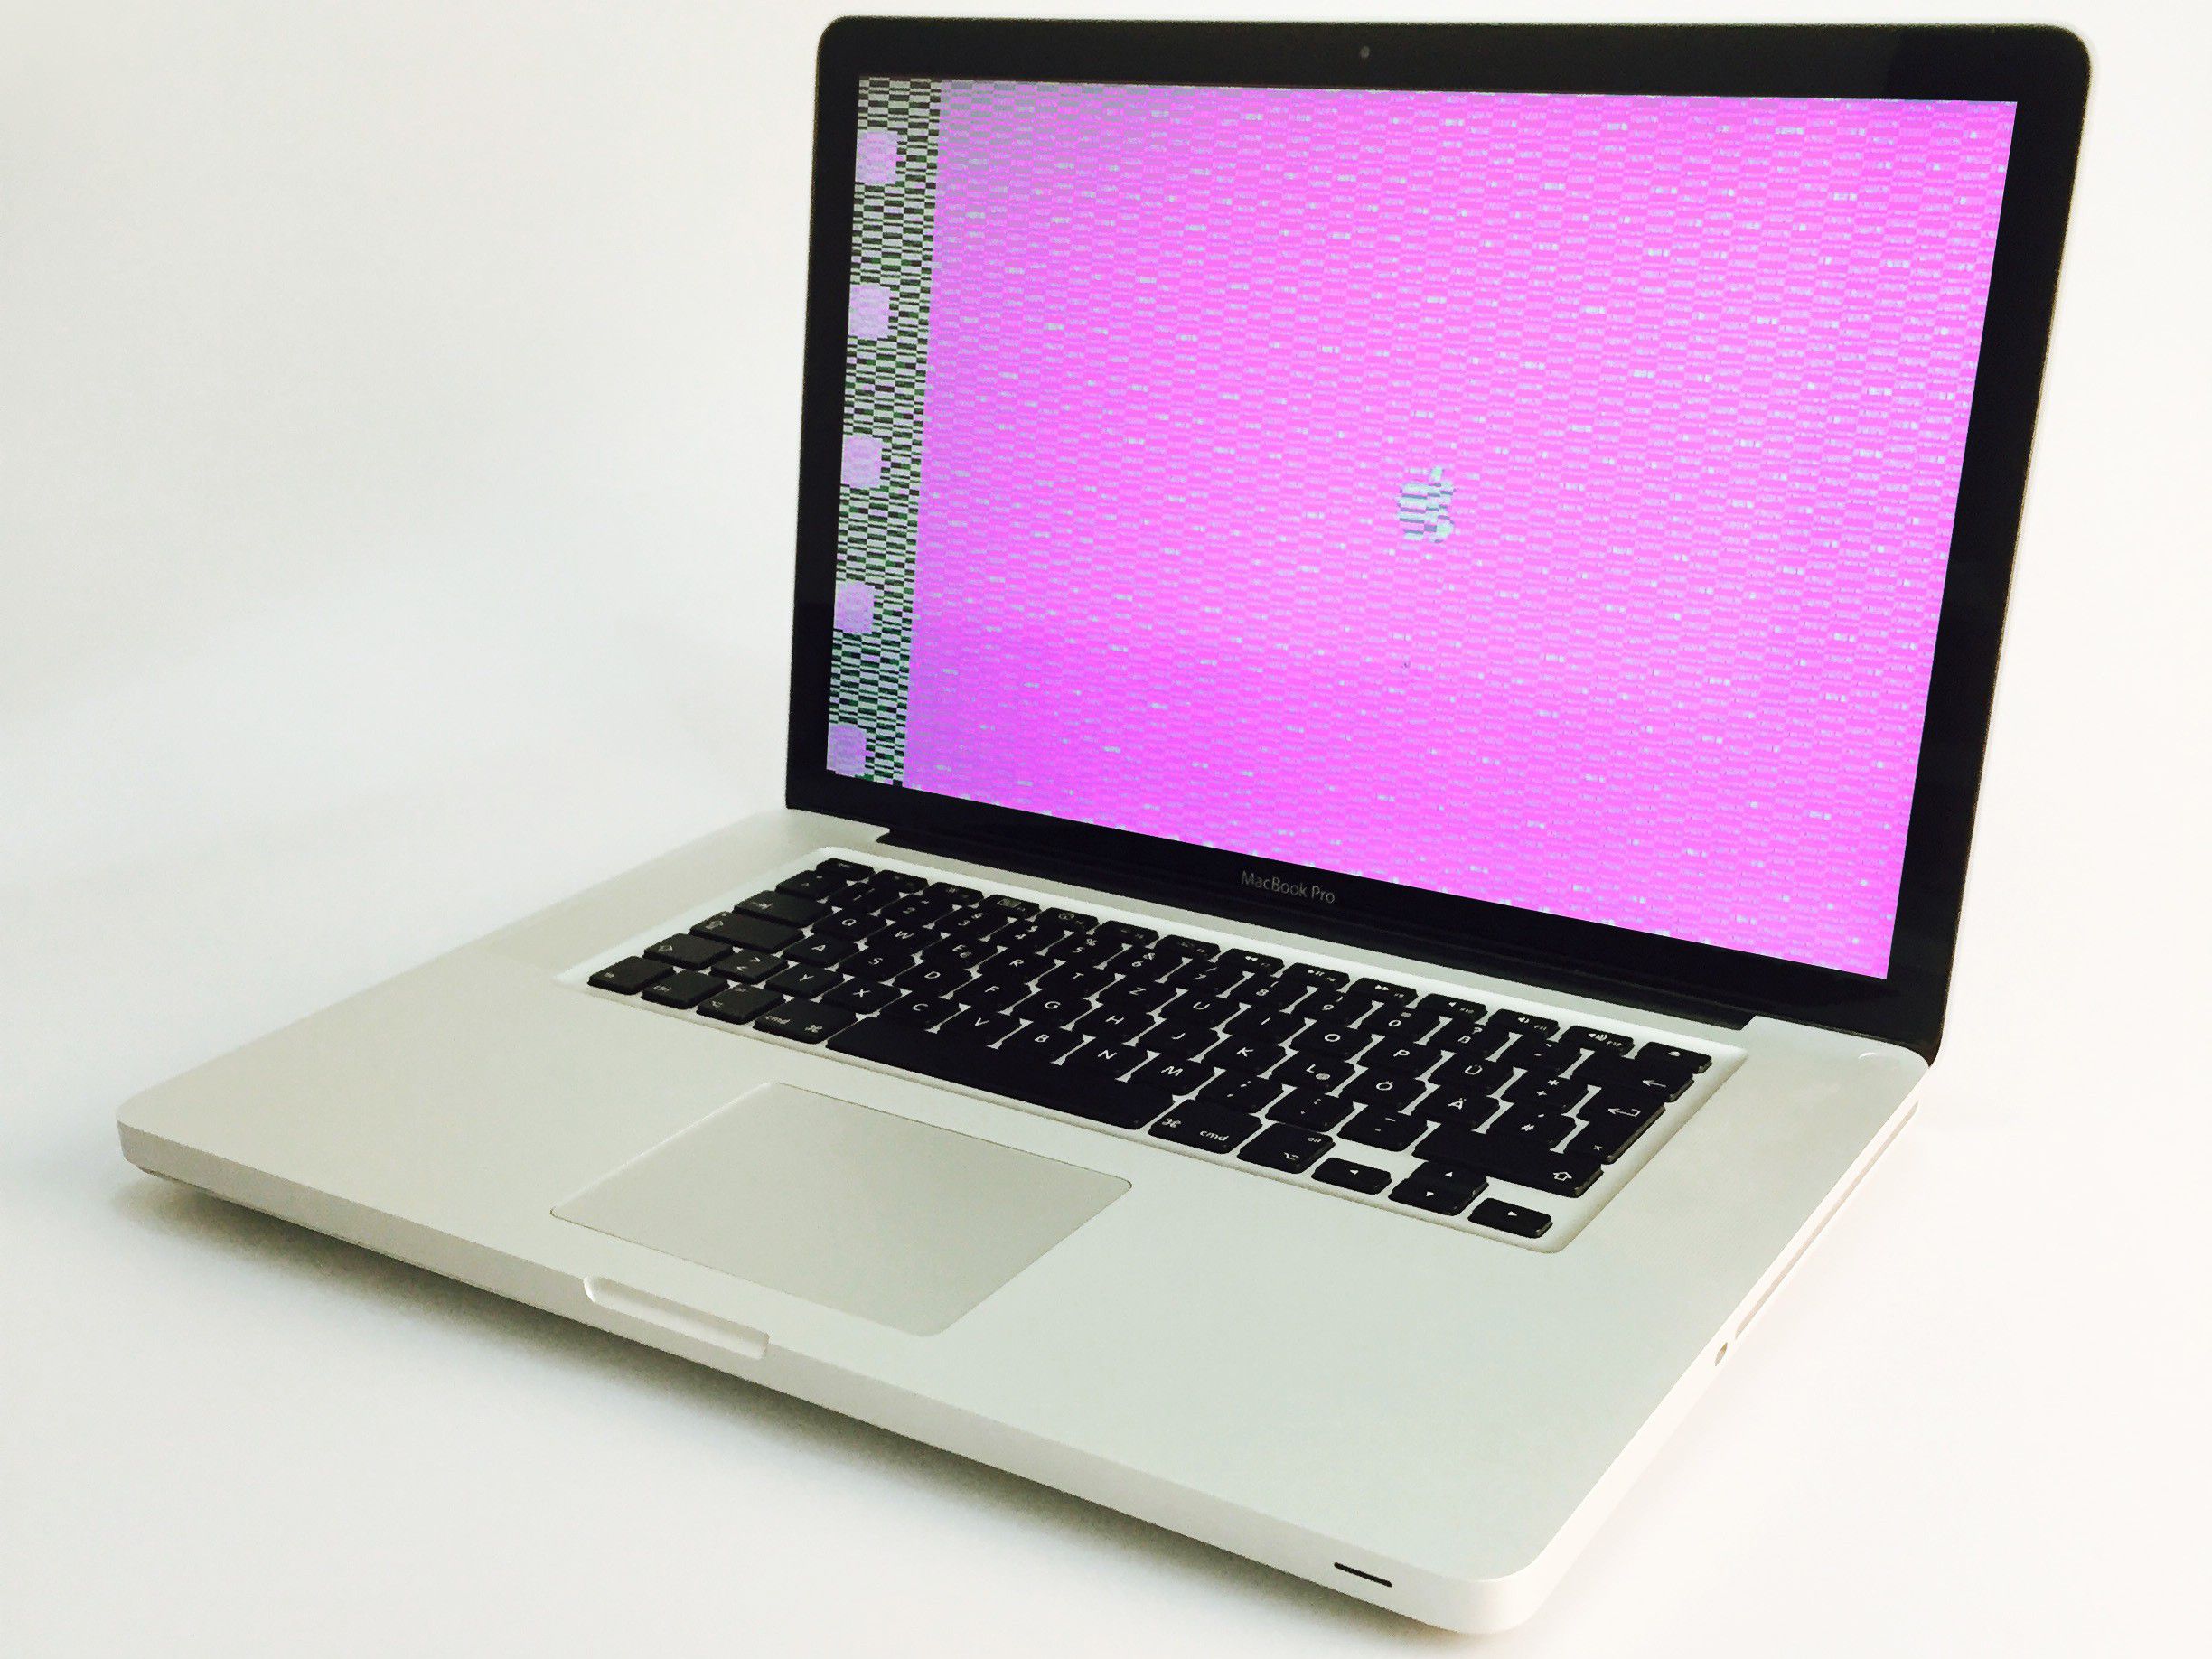 A1286 Apple MacBook Pro 2011 Reparatur Grafikchip Austausch 1Jahr Gewährleistung 